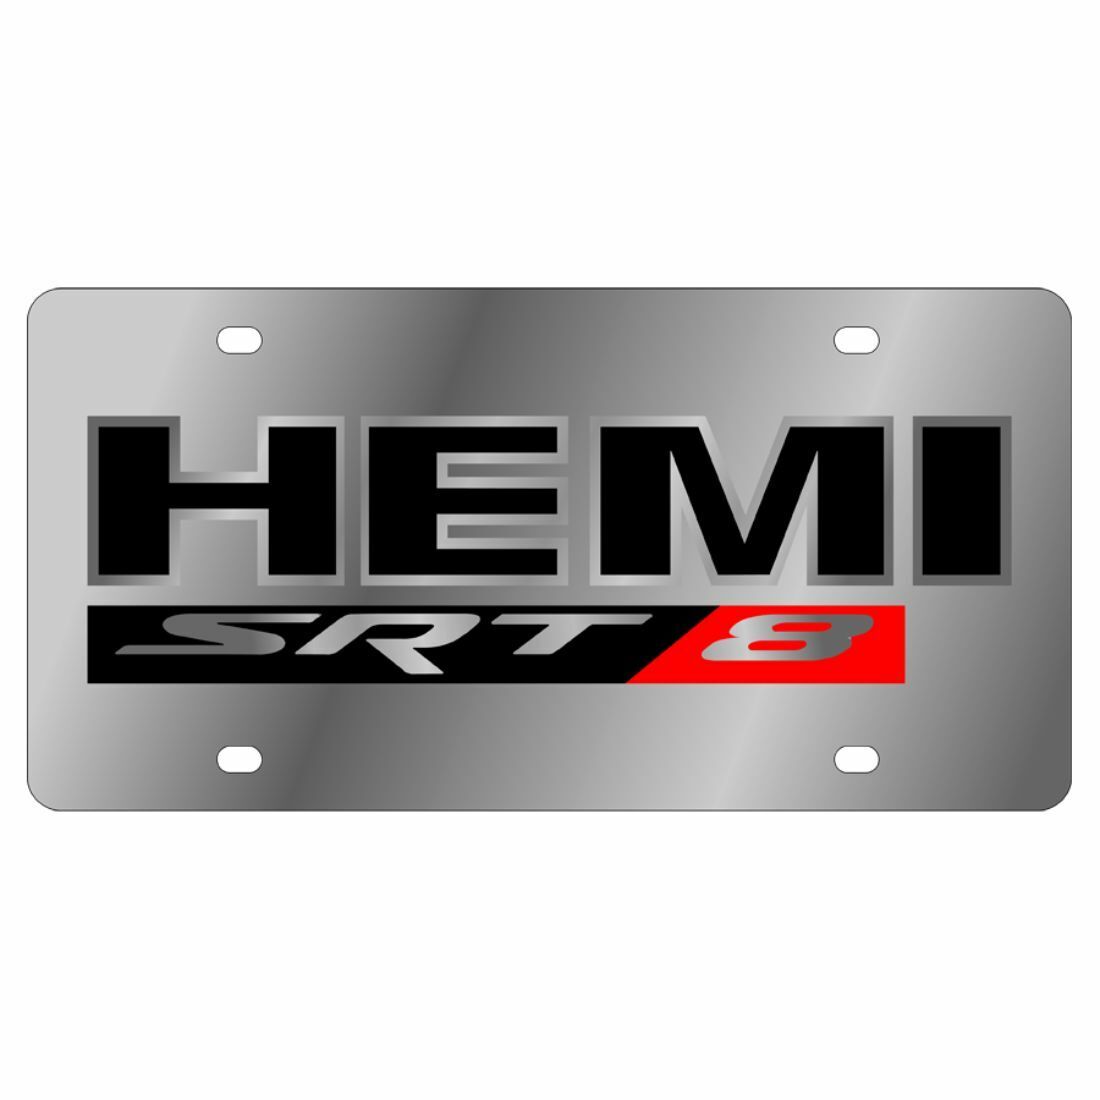 Stainless Steel Plate HEMI Outline SRT8 Badge License Plate Frame 3D Novelty